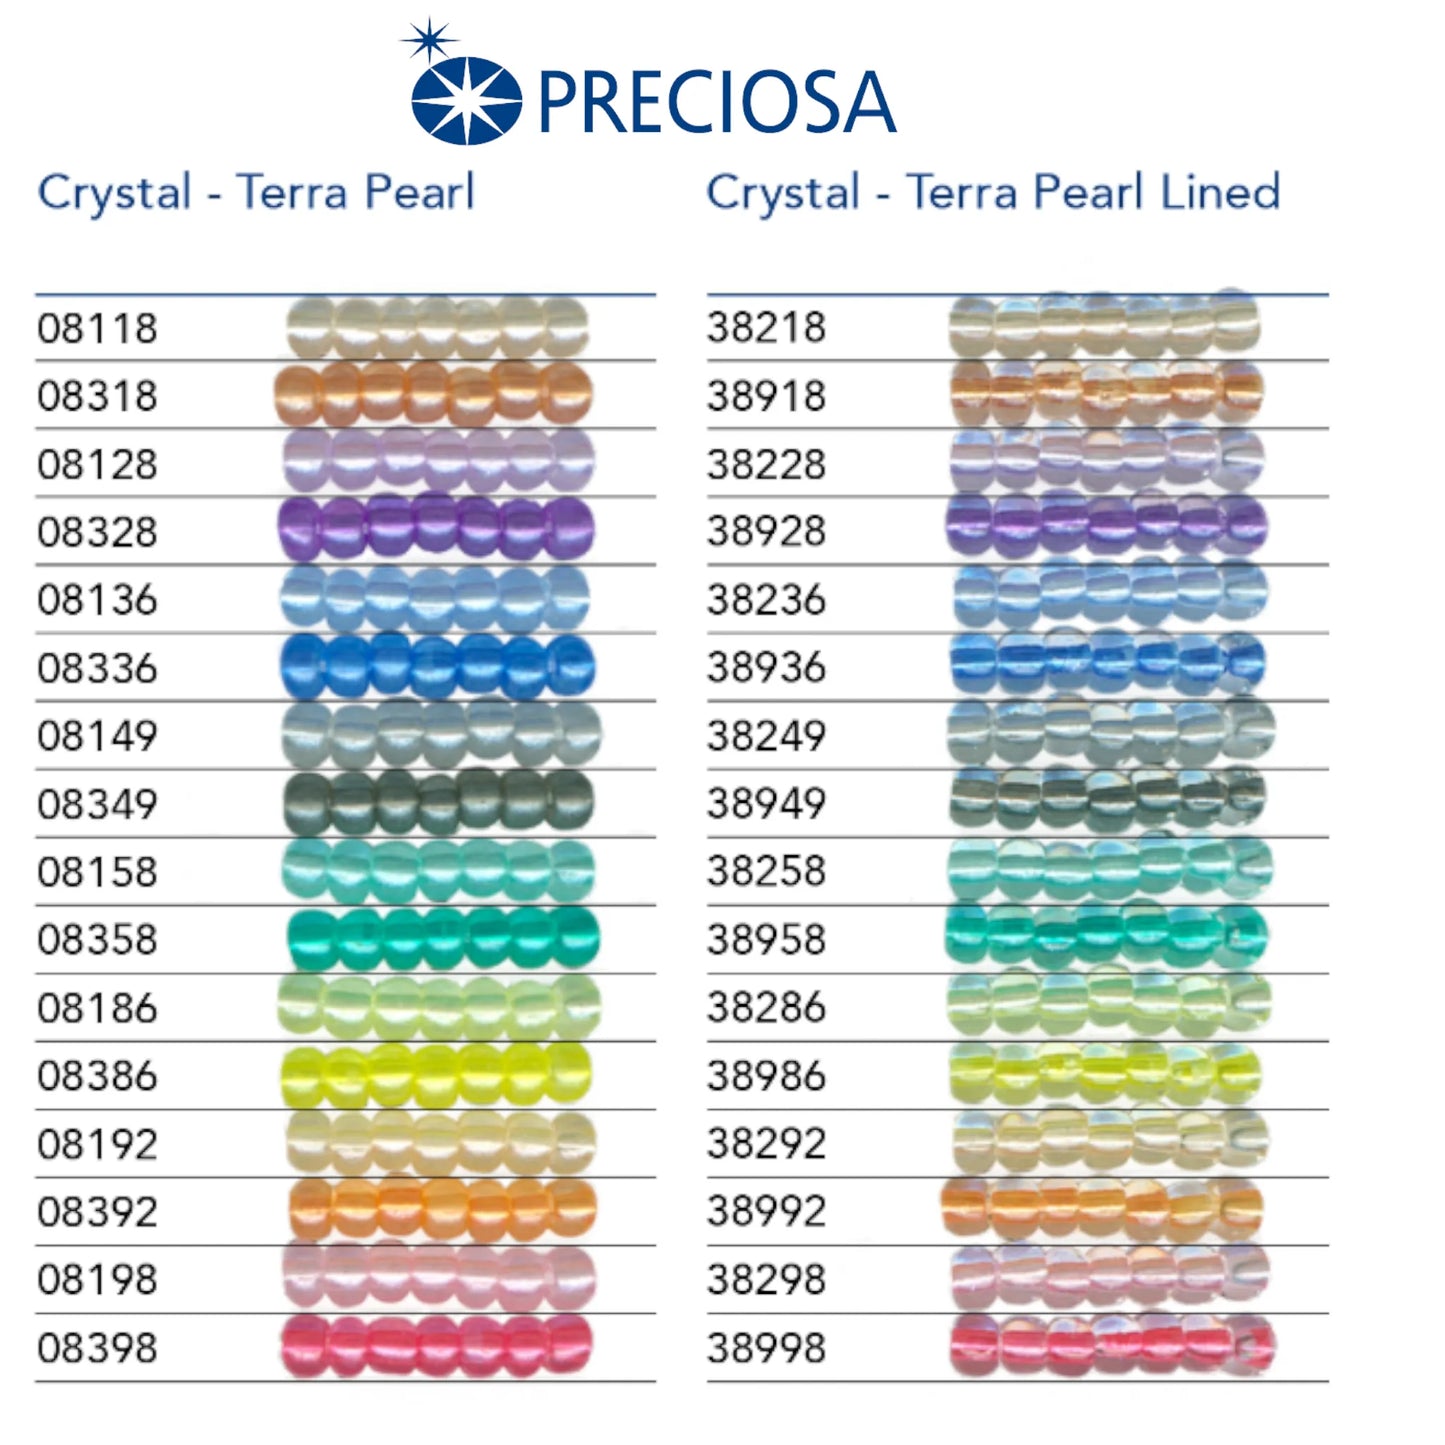 08328 Tschechische Rocailles PRECIOSA Rocailles 10/0 lila. Kristall - Terra Pearl.